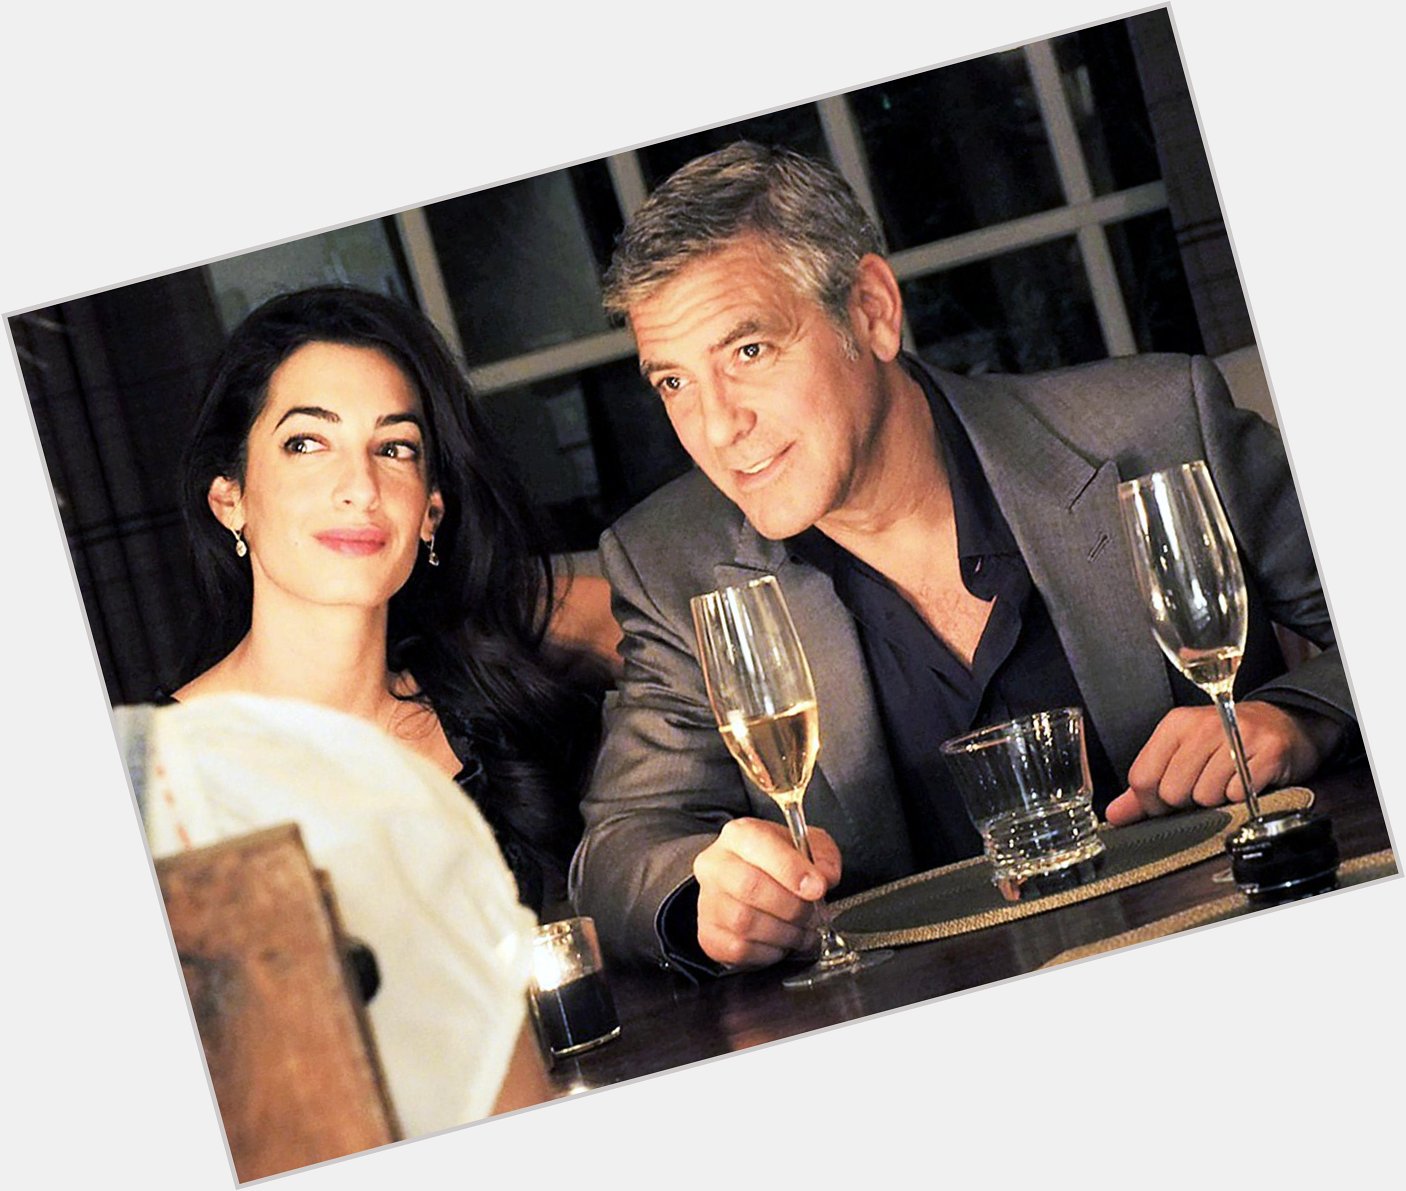 Happy Birthday : Amal Alamuddin alias Mme Clooney fête ses 37 ans! Un = un joyeux anniversaire à elle ! 